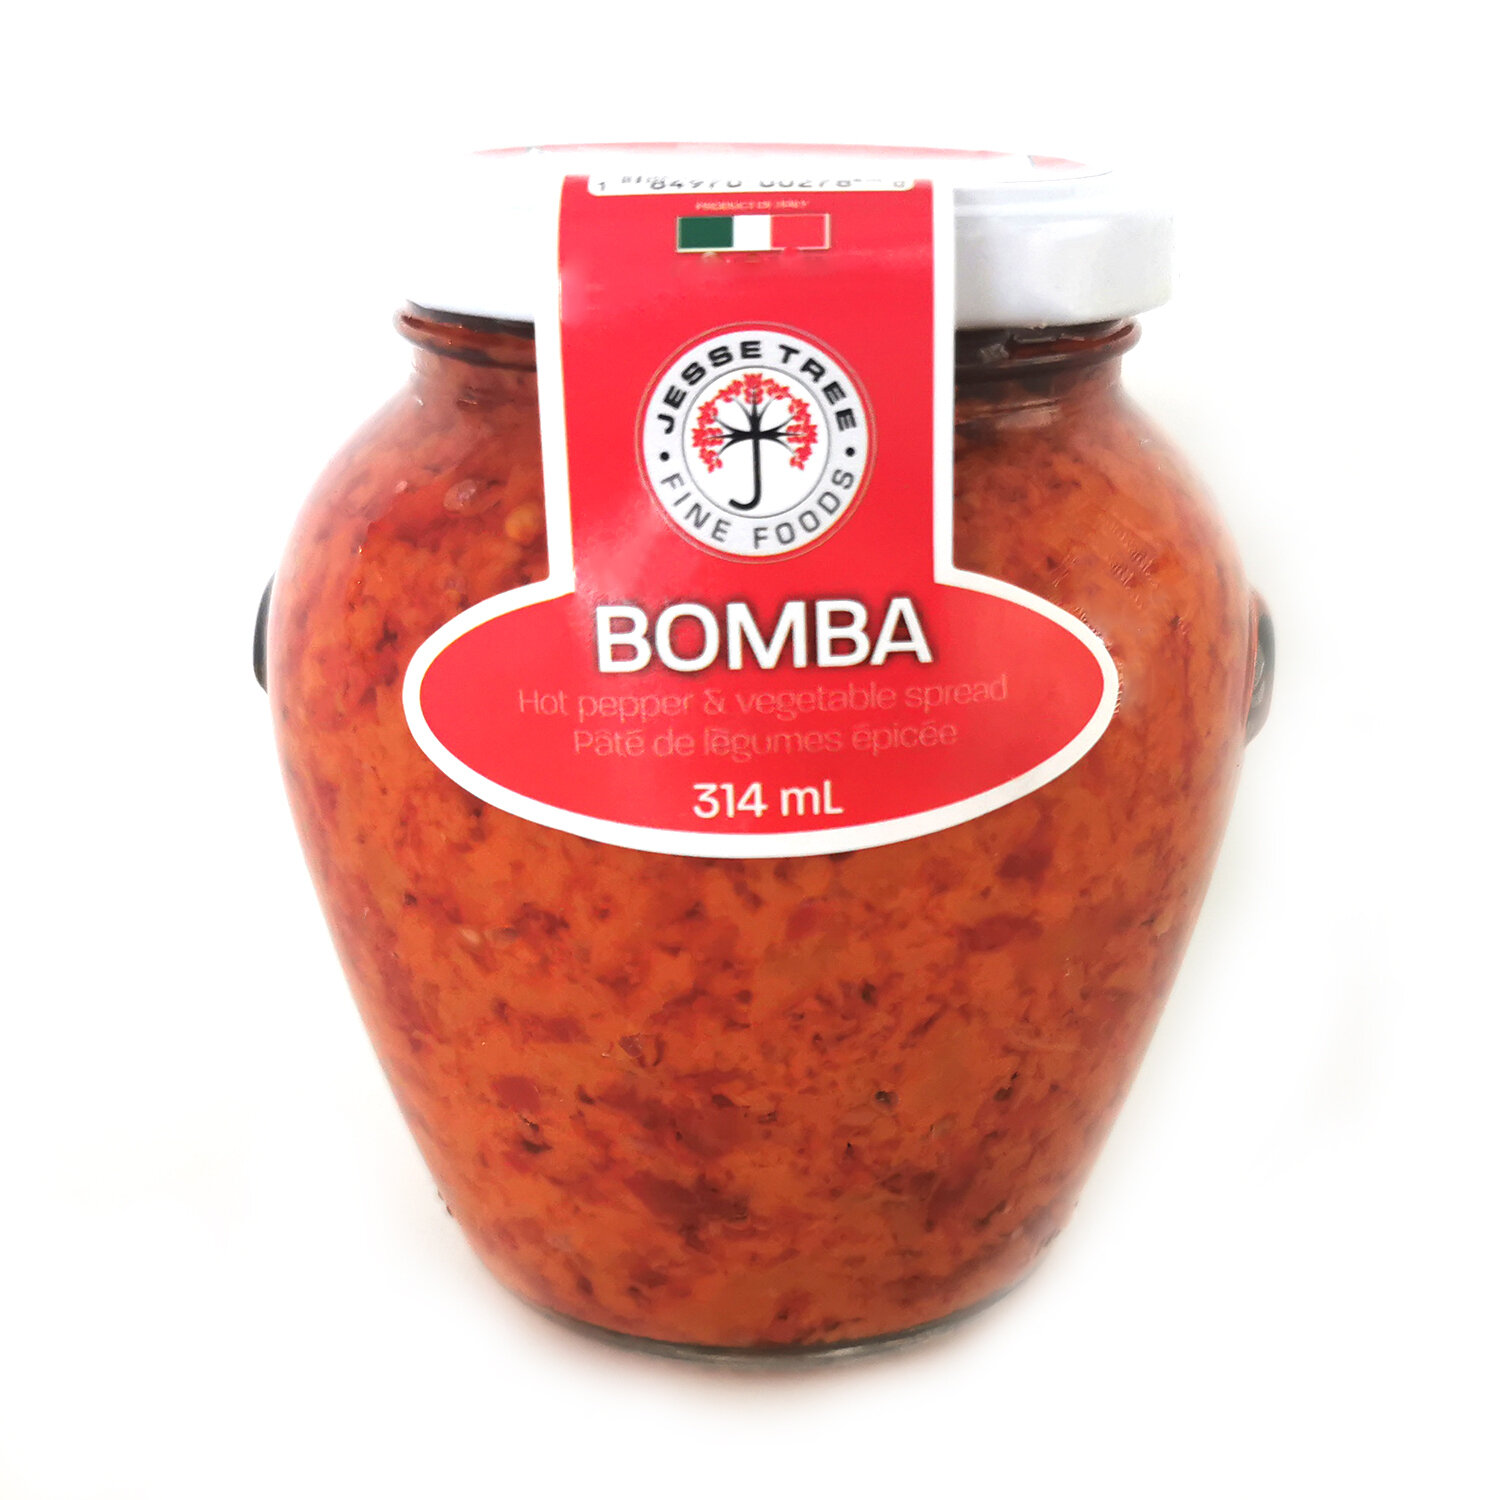 Bomba (314ml)